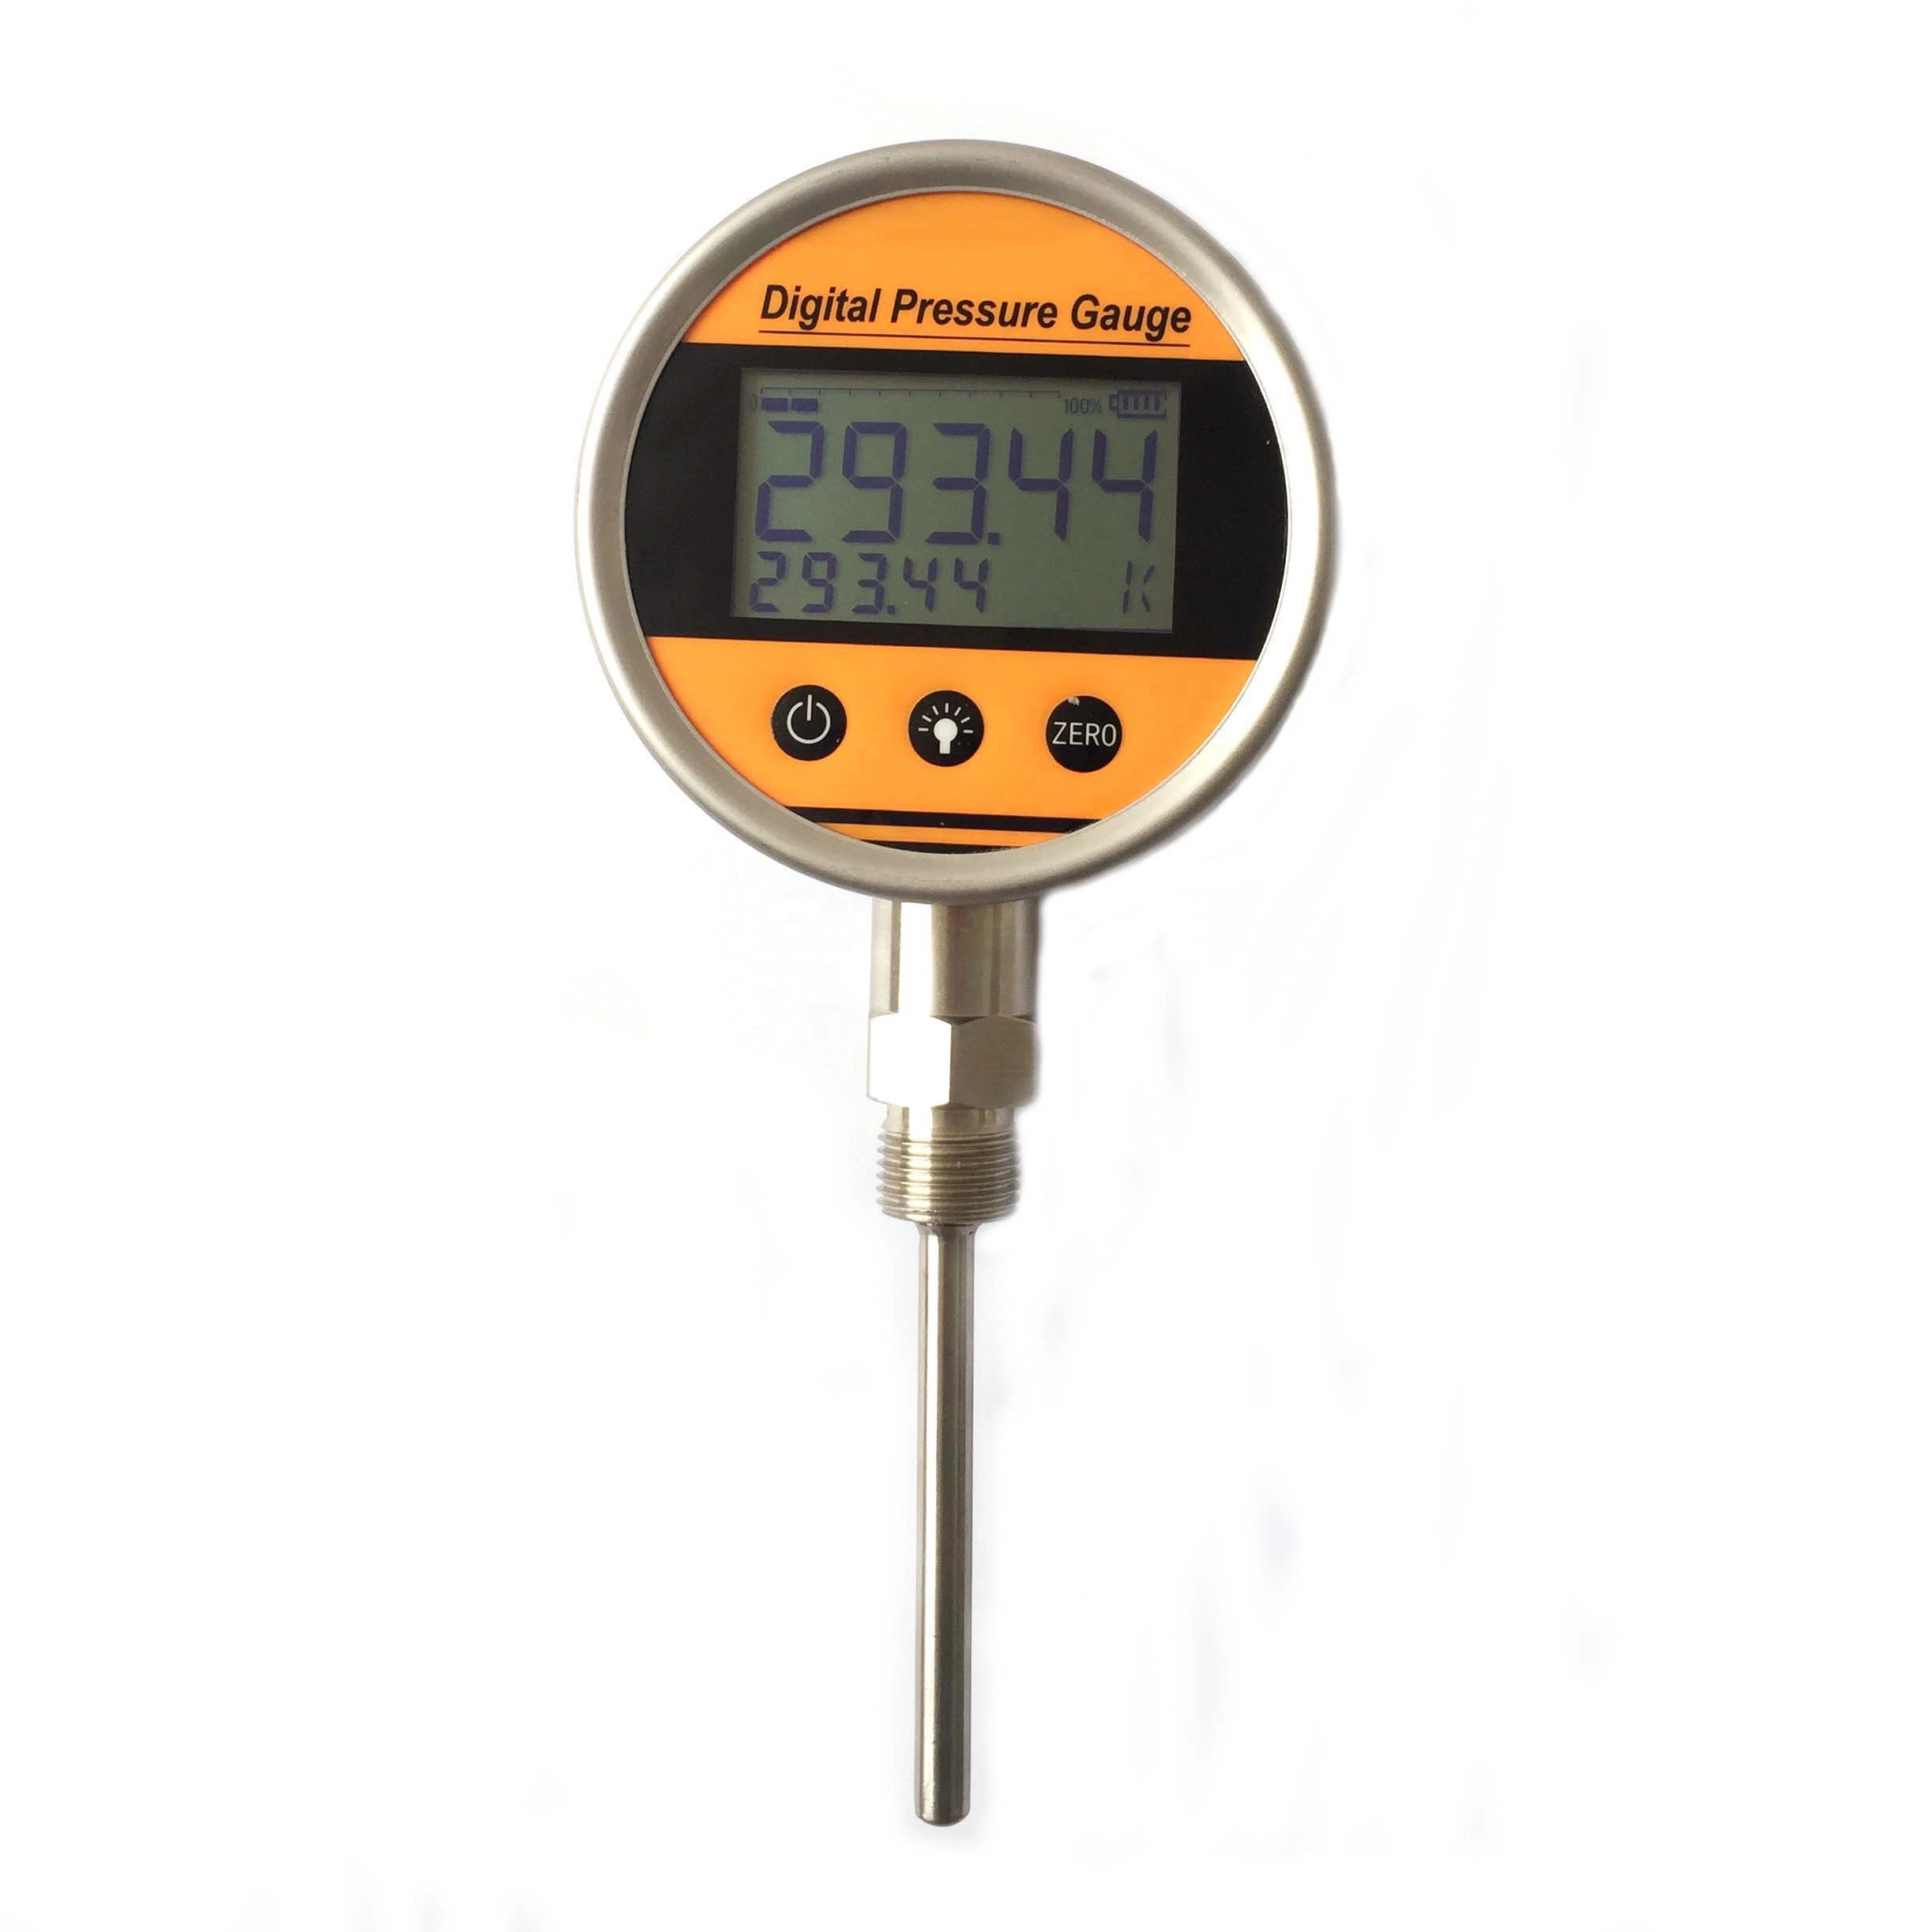 Bateria - água quente com Poweredhot com medidor digital de temperatura do óleo Thermowell